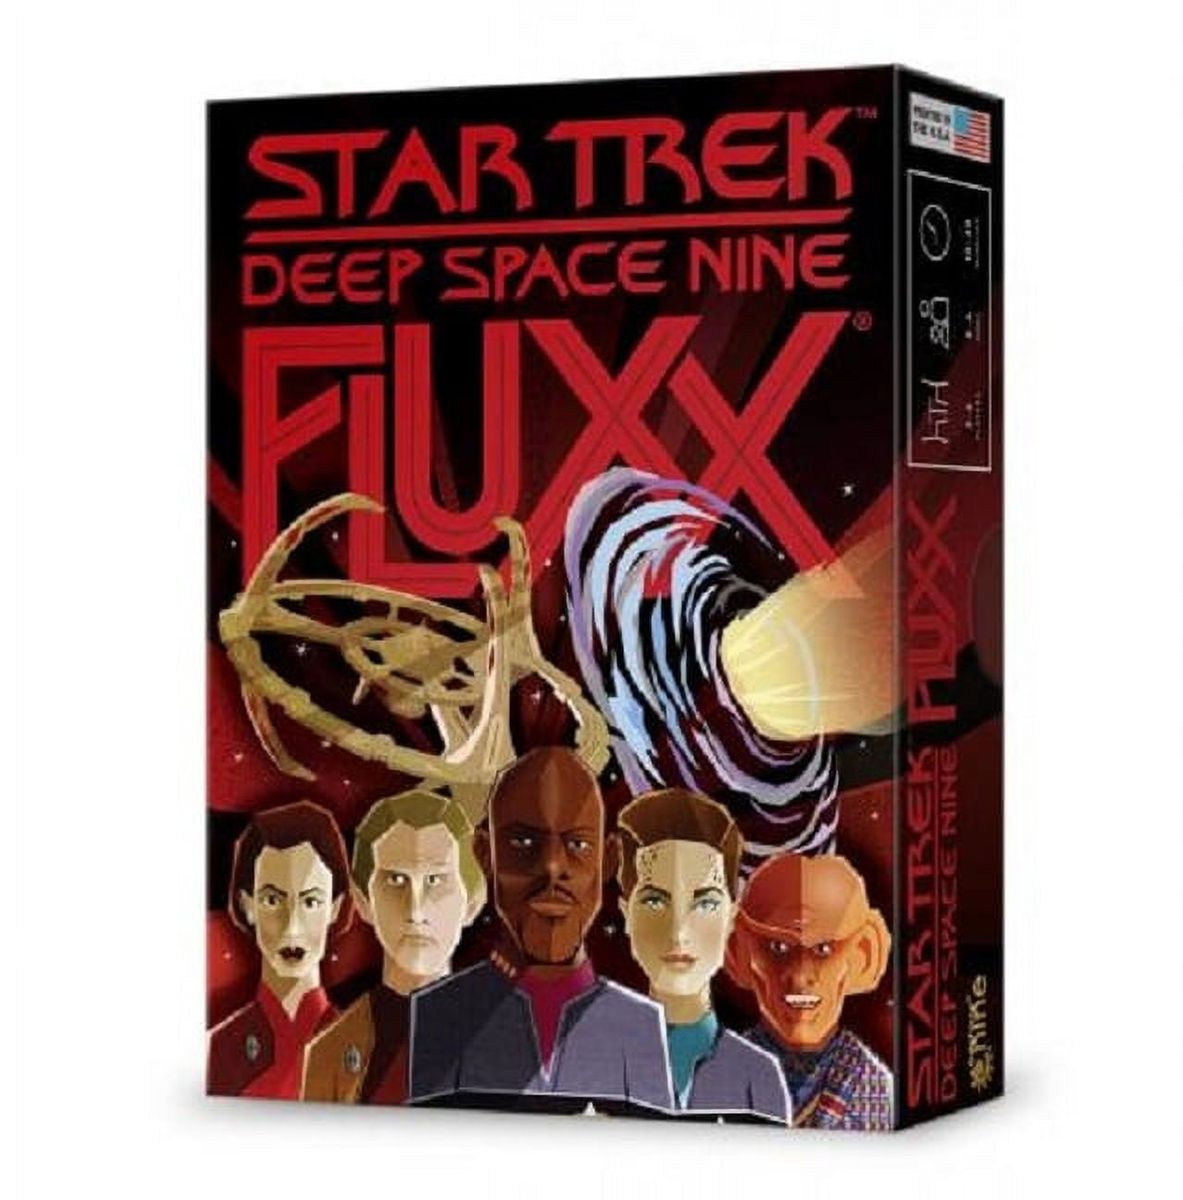 [RDY] [送料無料] FLUXX スタートレック ディープ・スペース9 FLUXX [楽天海外通販] | Fluxx Star Trek Deep Space 9 Fluxx